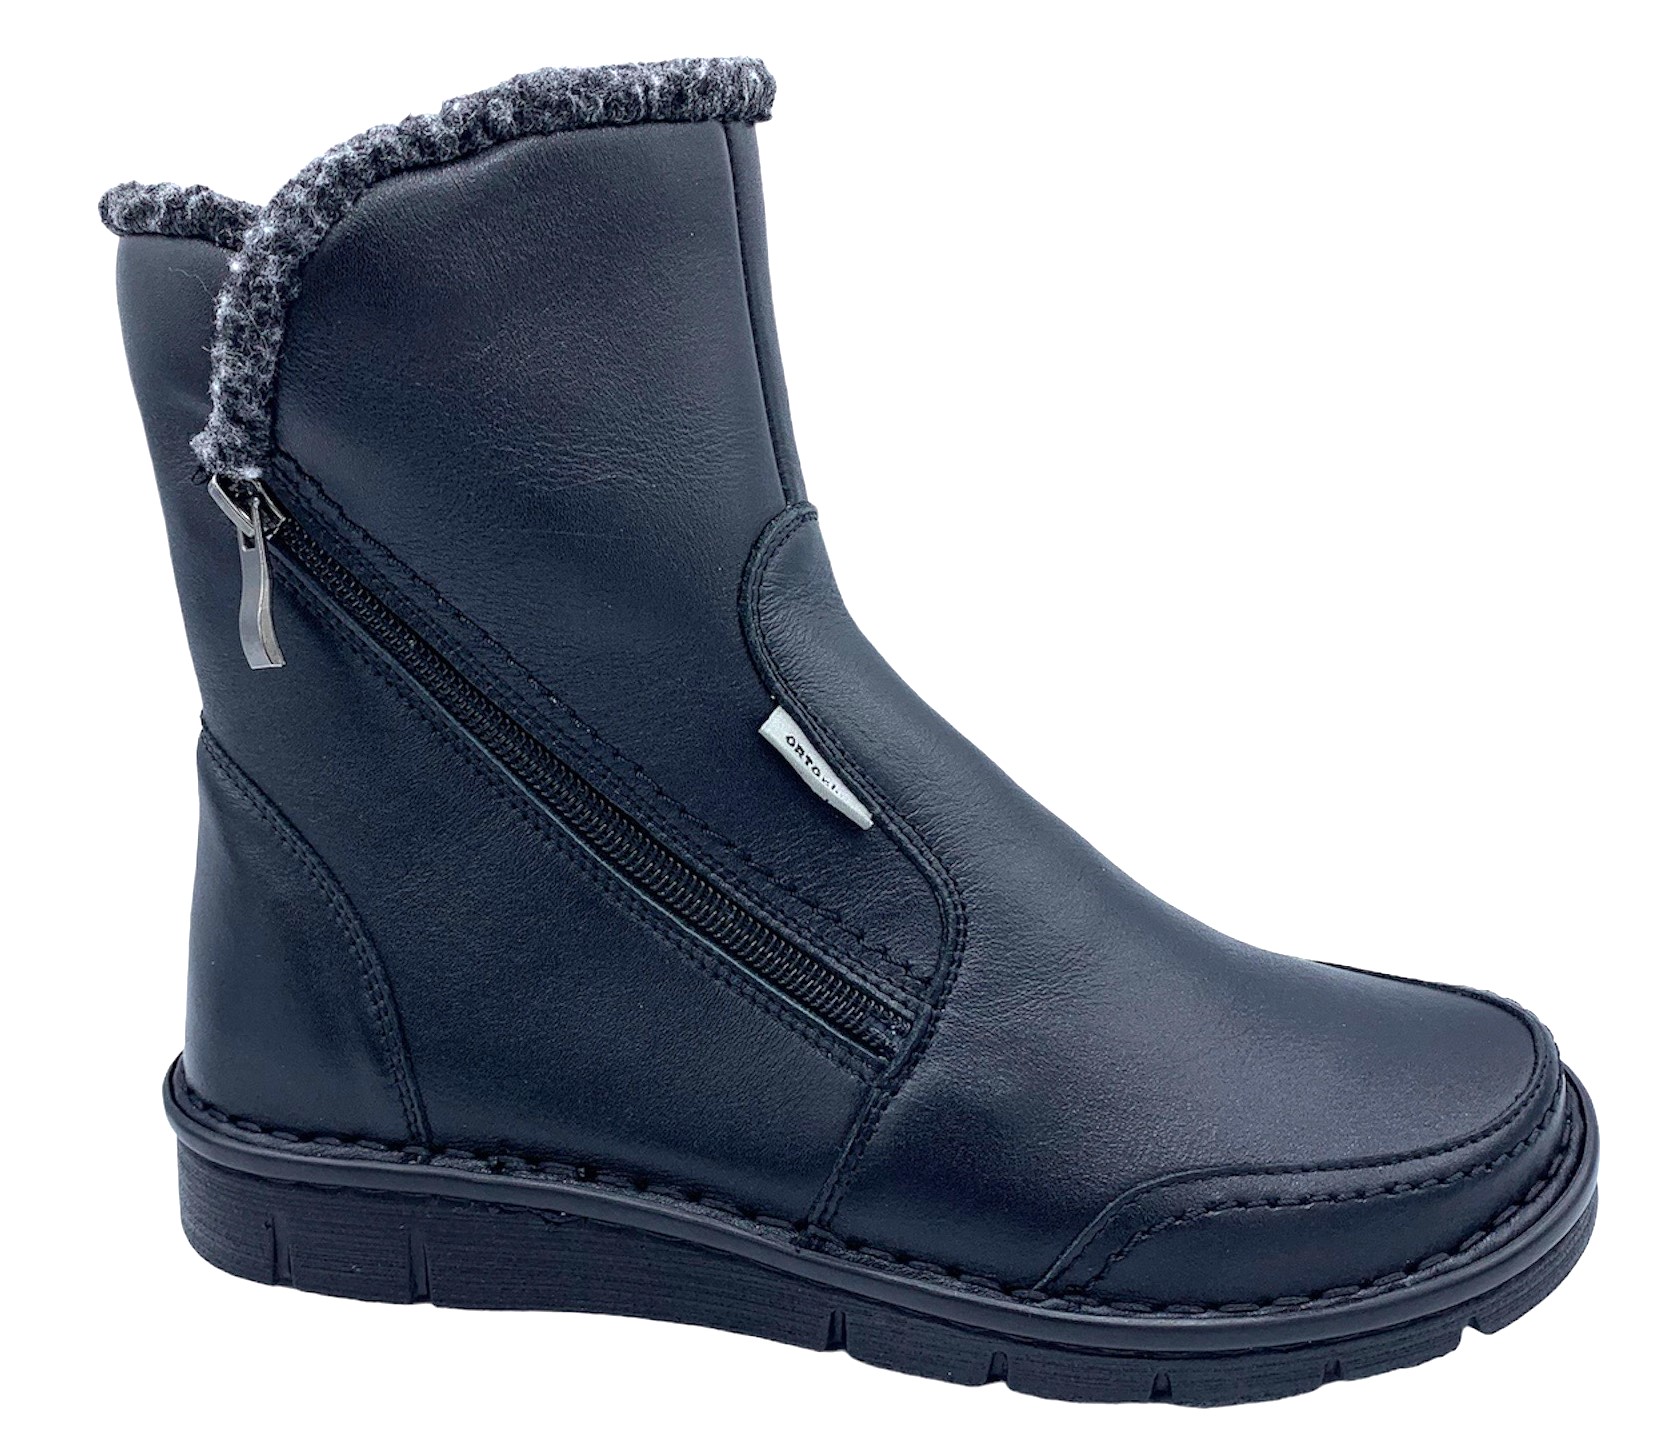 Dámská zimní zdravotní obuv Orto Plus 90115 černé Velikost: 37 (EU)